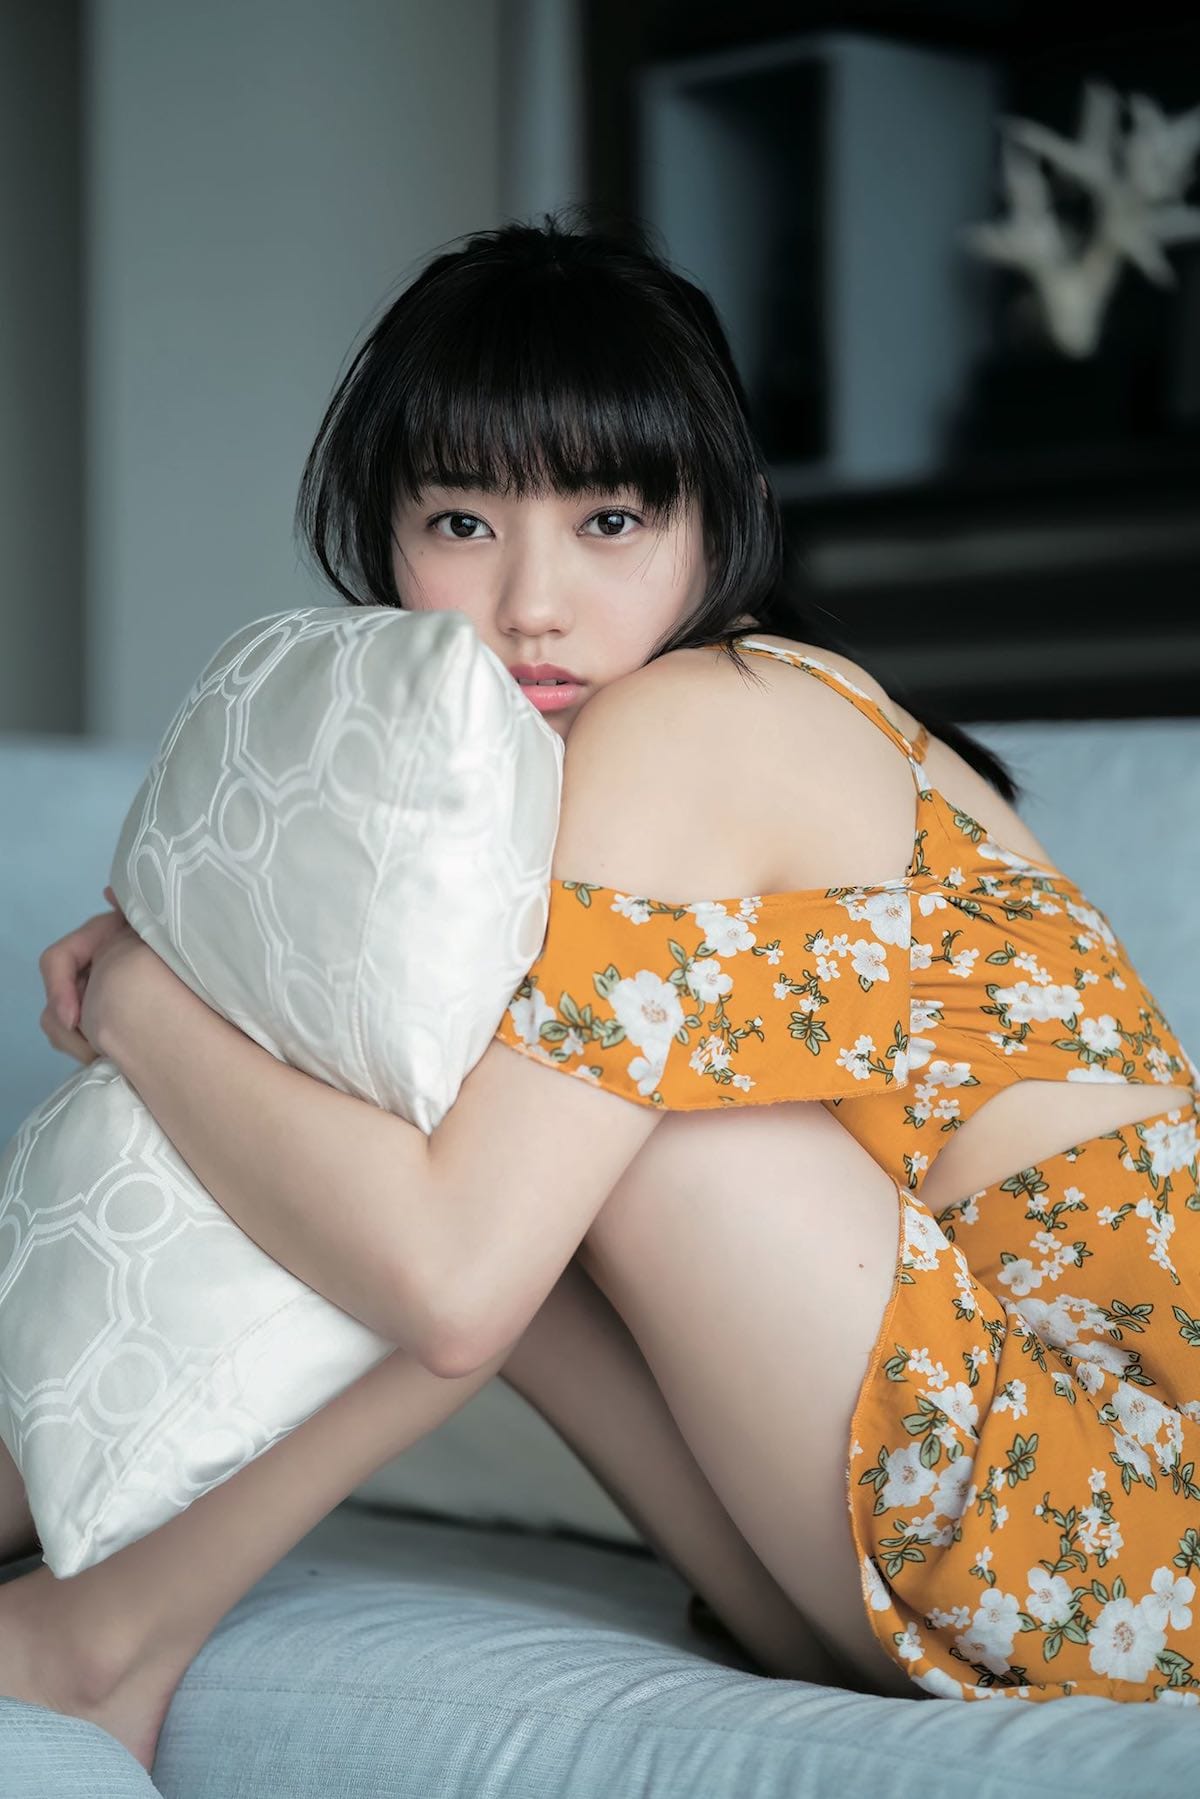 美少女アイドル富永美杜が貴重な水着ショットを 週刊ヤングジャンプ グラビアで披露 Qetic